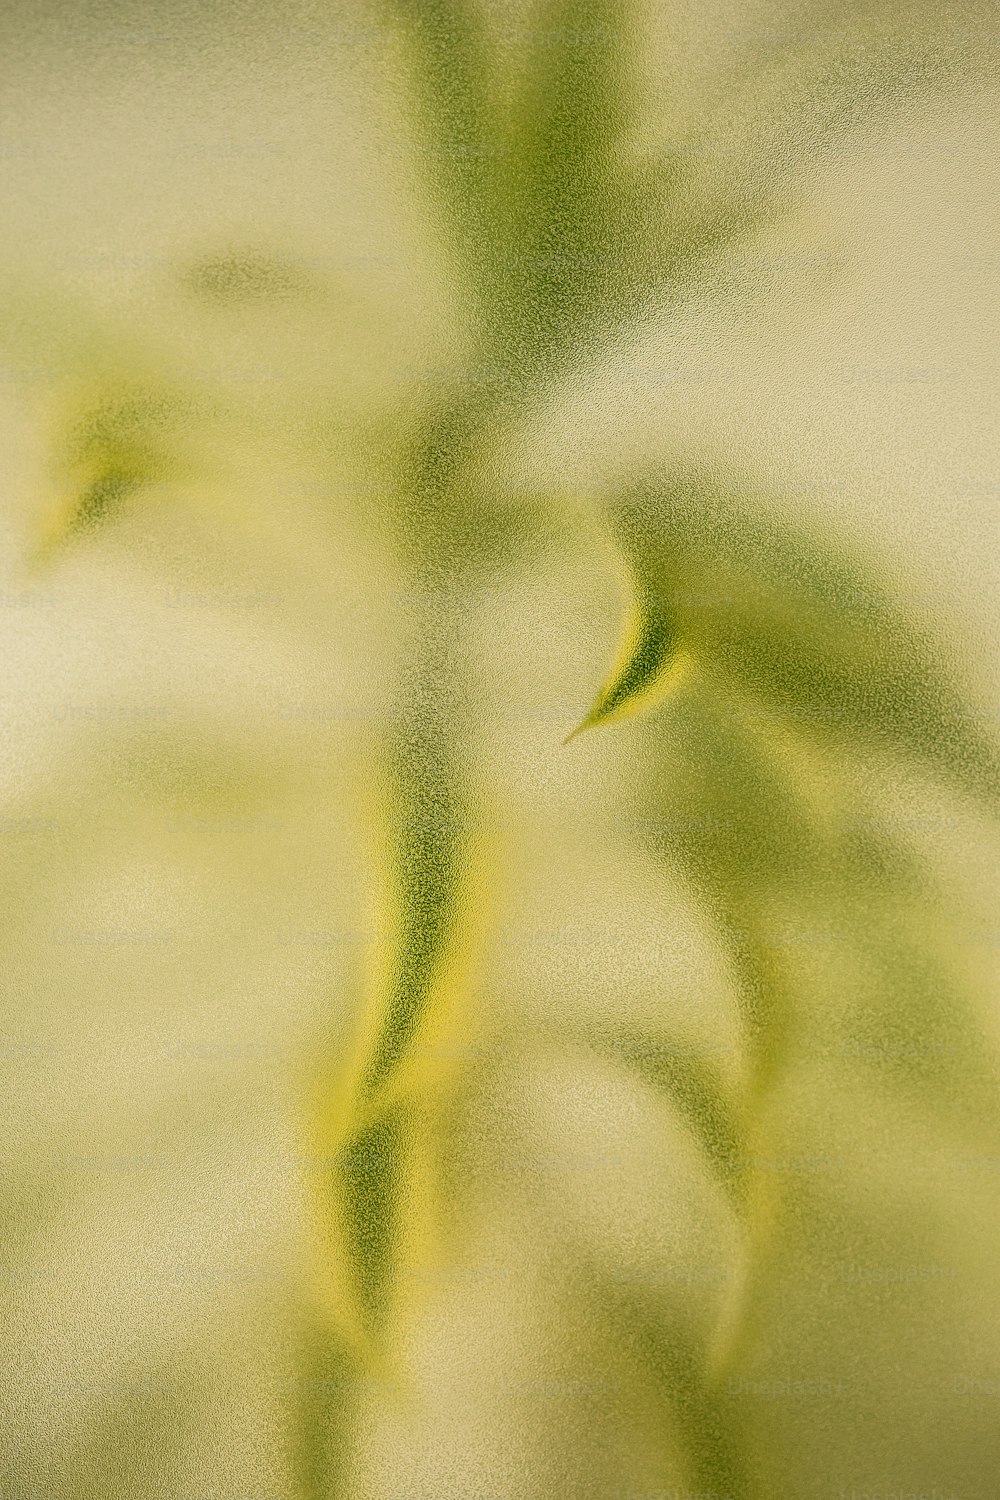 une photo floue d’une plante aux feuilles vertes